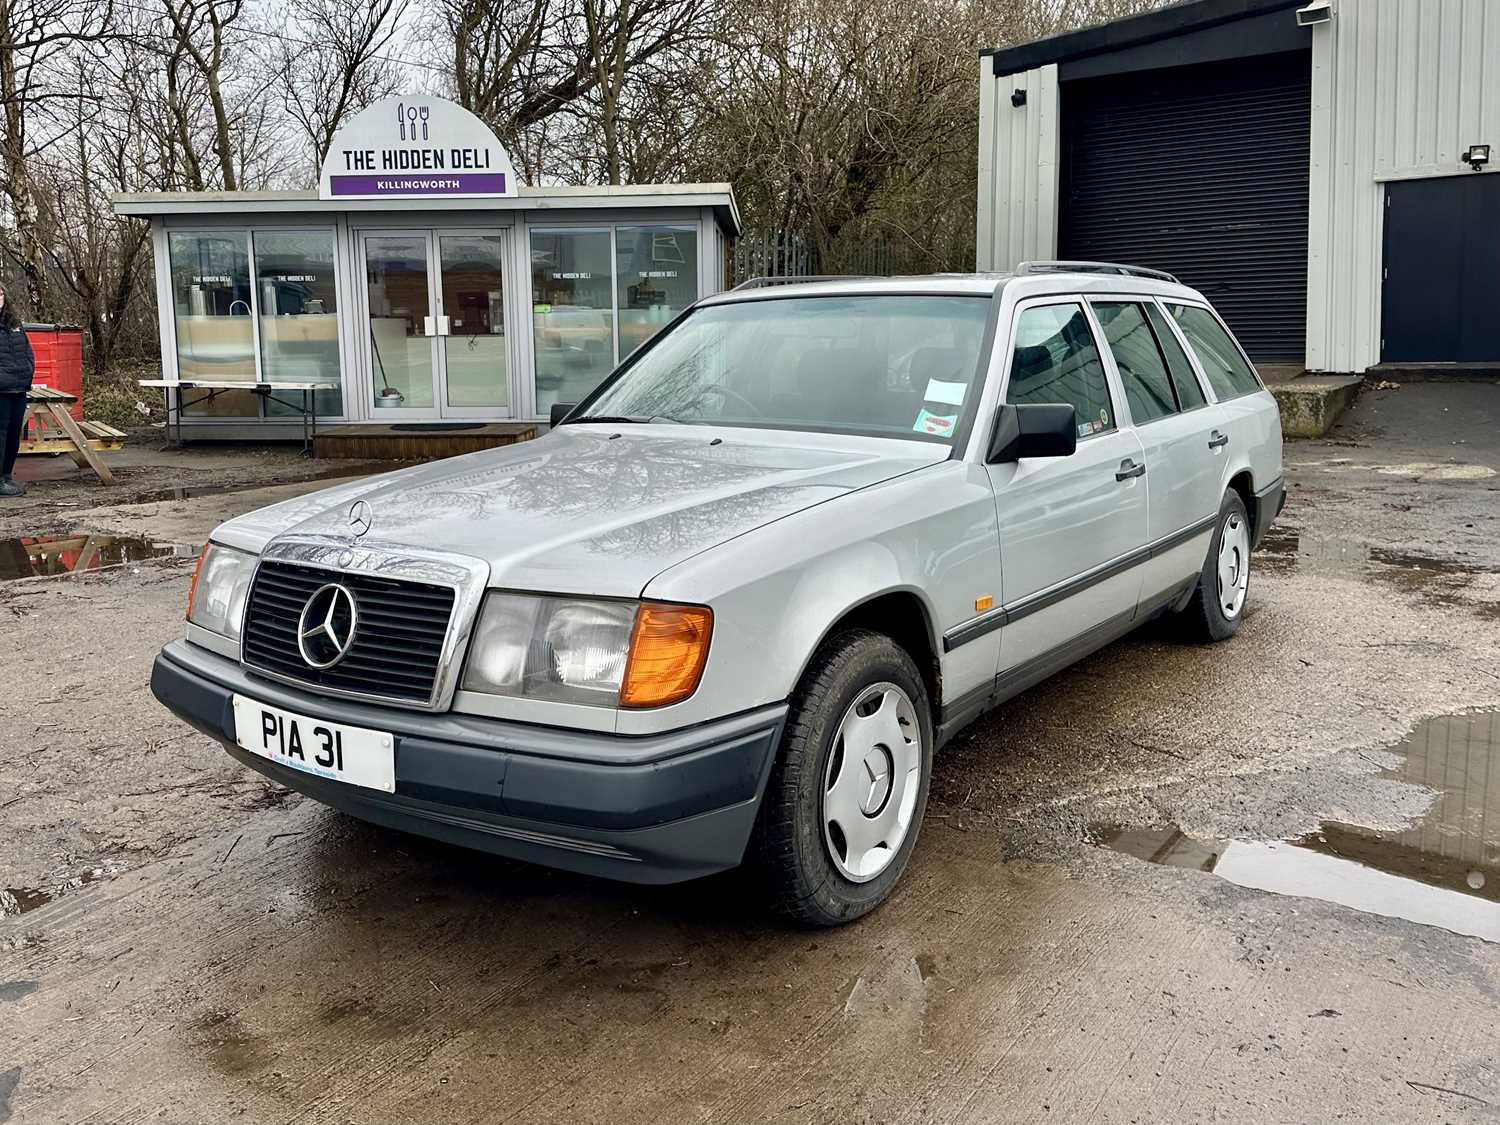 1988 Mercedes-Benz E230 - Image 3 of 15